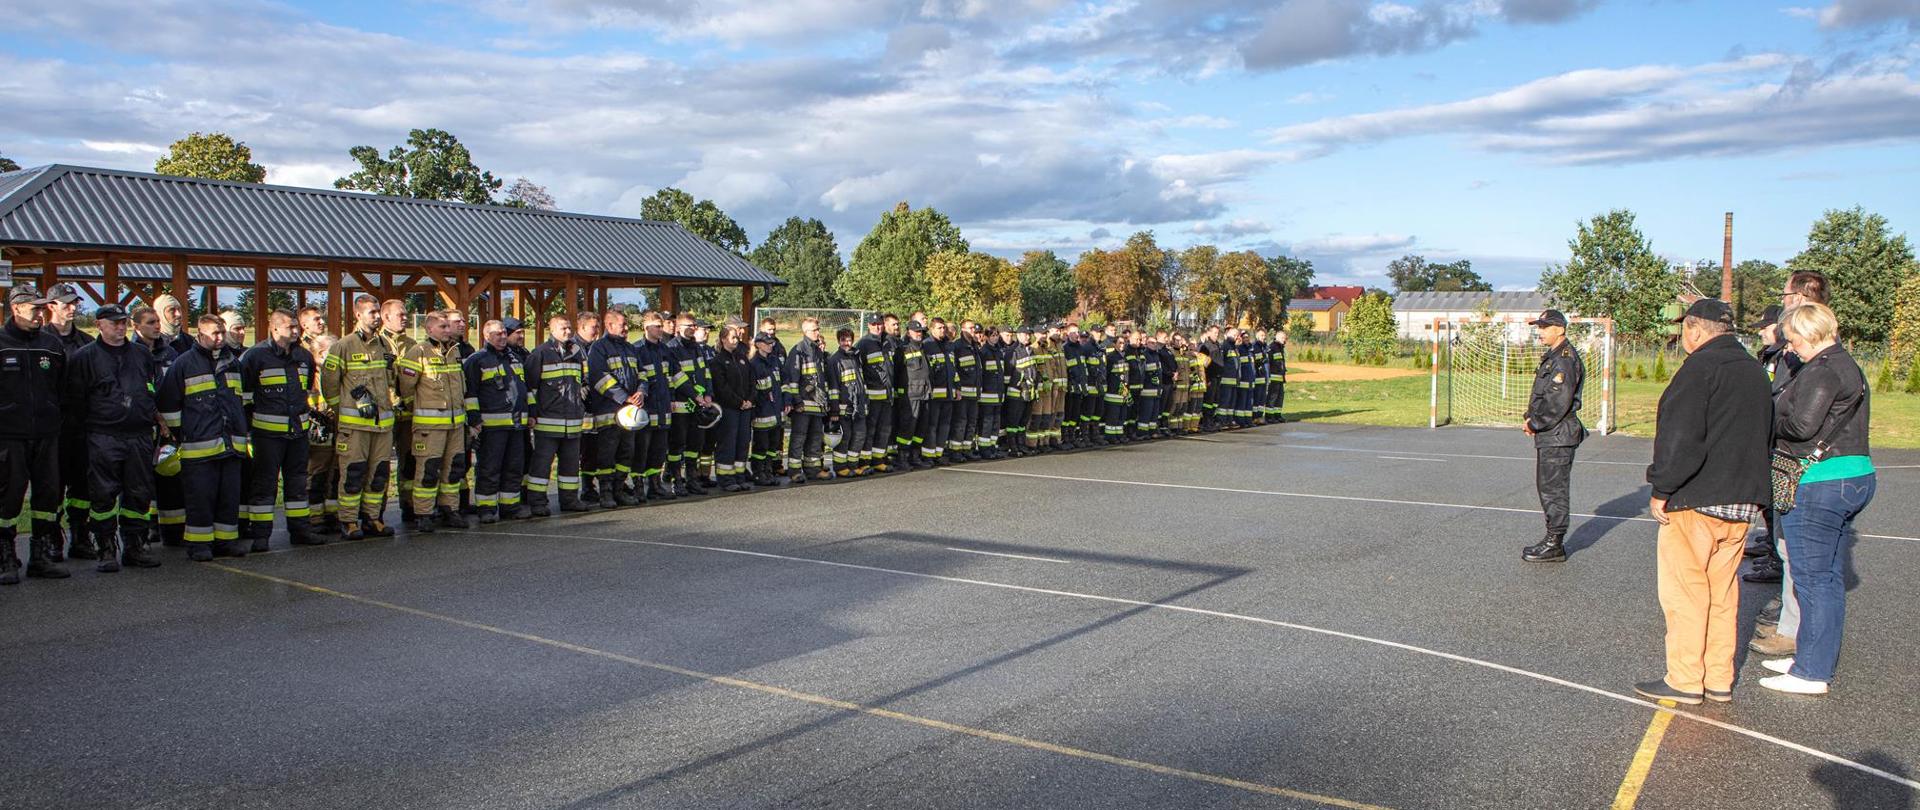 Na zdjęciu widać wszystkich strażaków biorących udział w manewrach medycznych podczas powitania przez organizatorów.